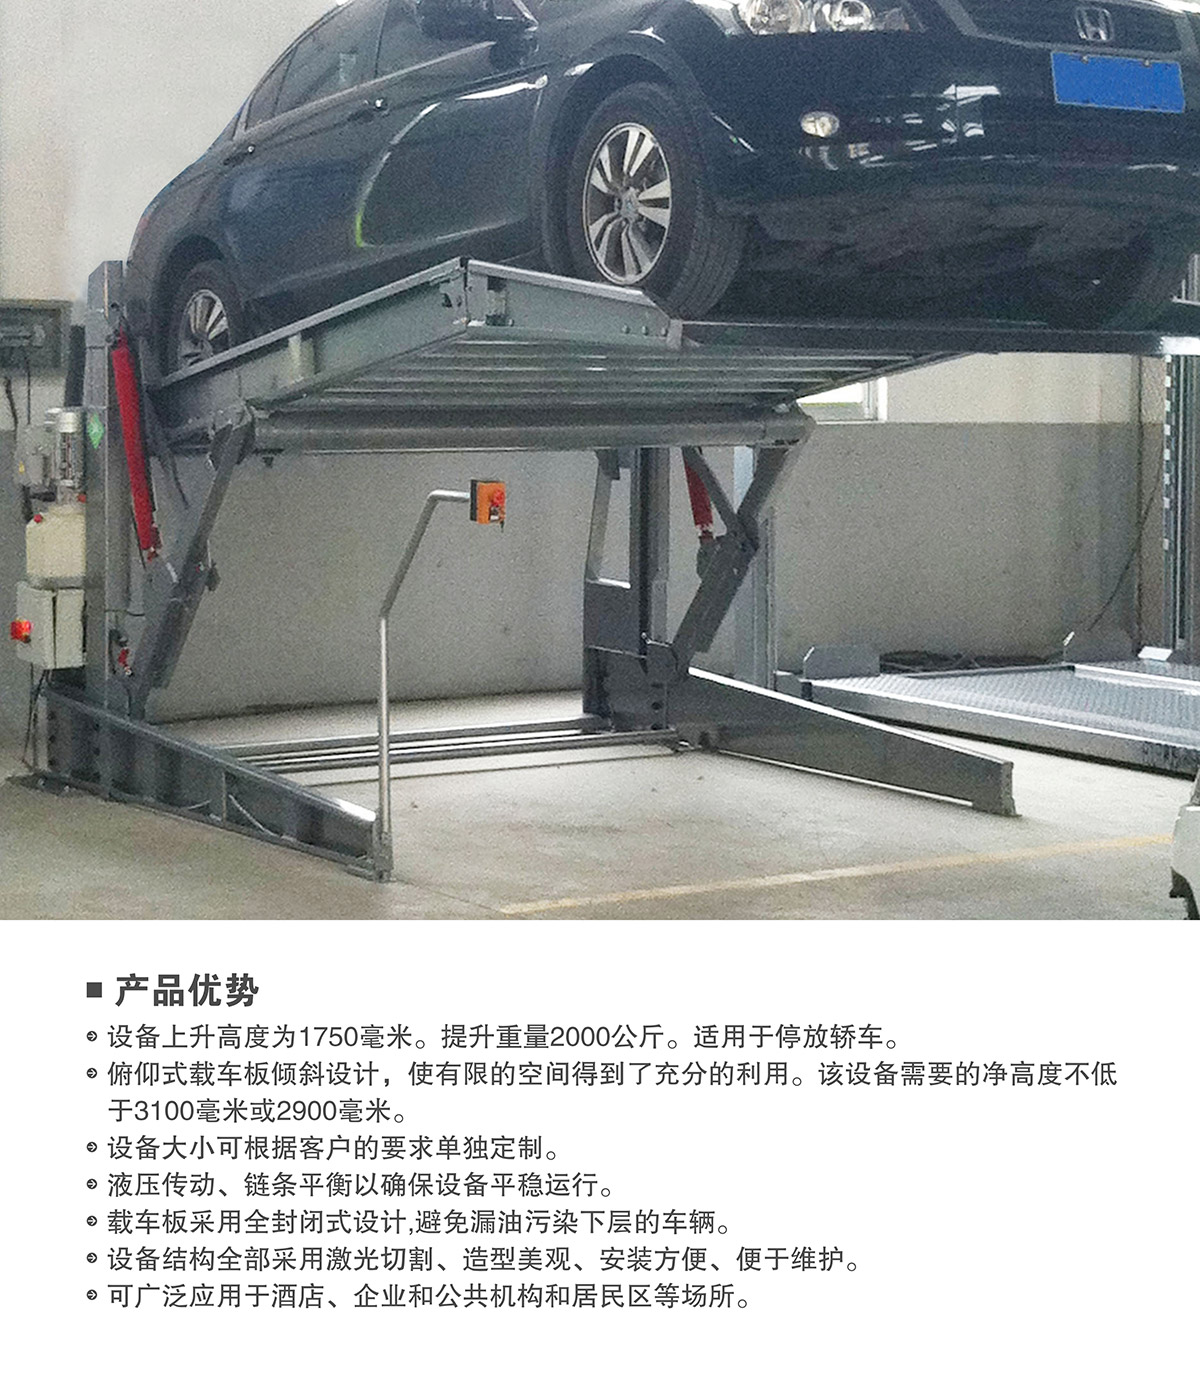 四川俯仰式简易升降立体停车设备产品优势.jpg